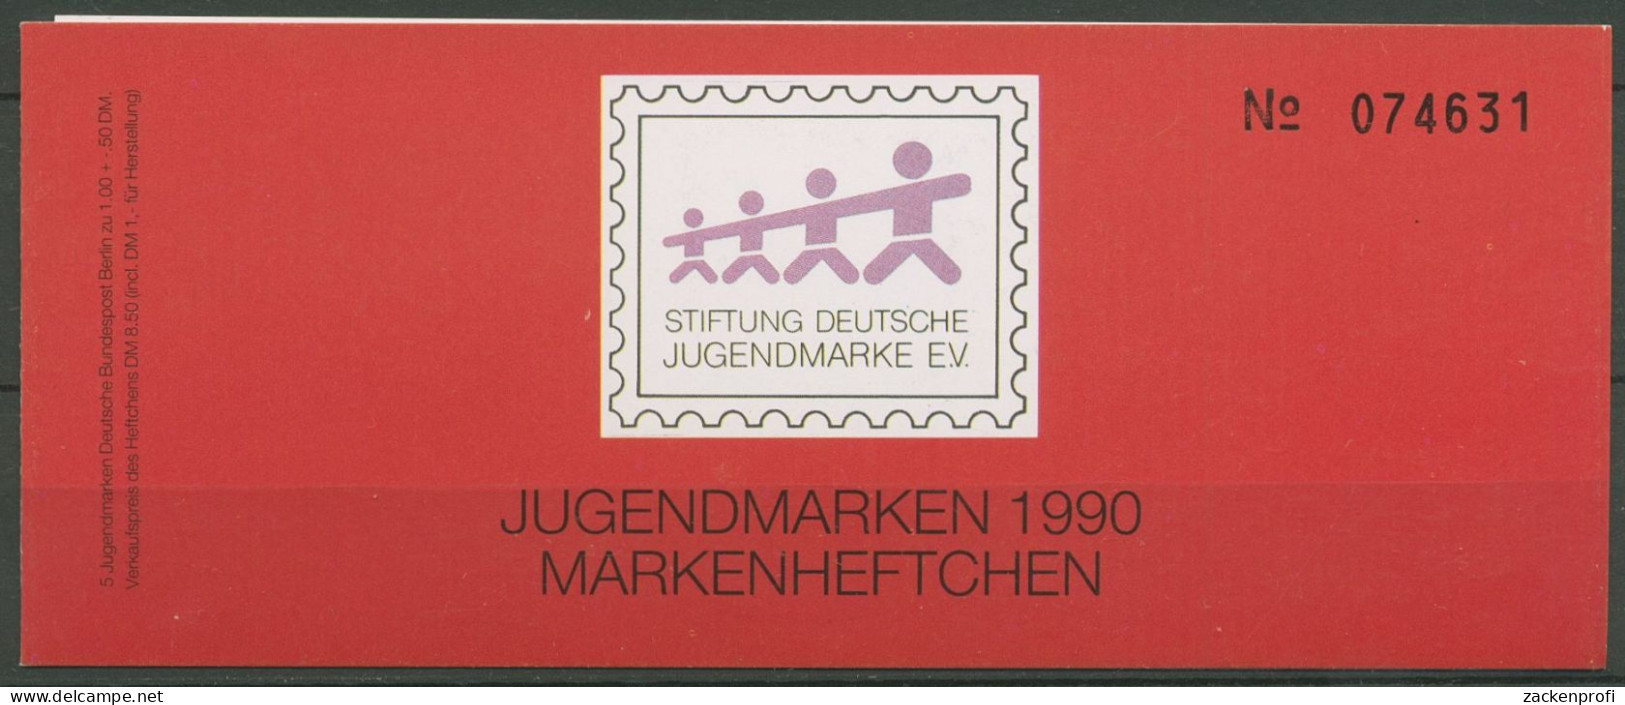 Berlin Jugendmarke 1990 Max & Moritz Markenheftchen 871 MH Postfrisch (C60184) - Markenheftchen